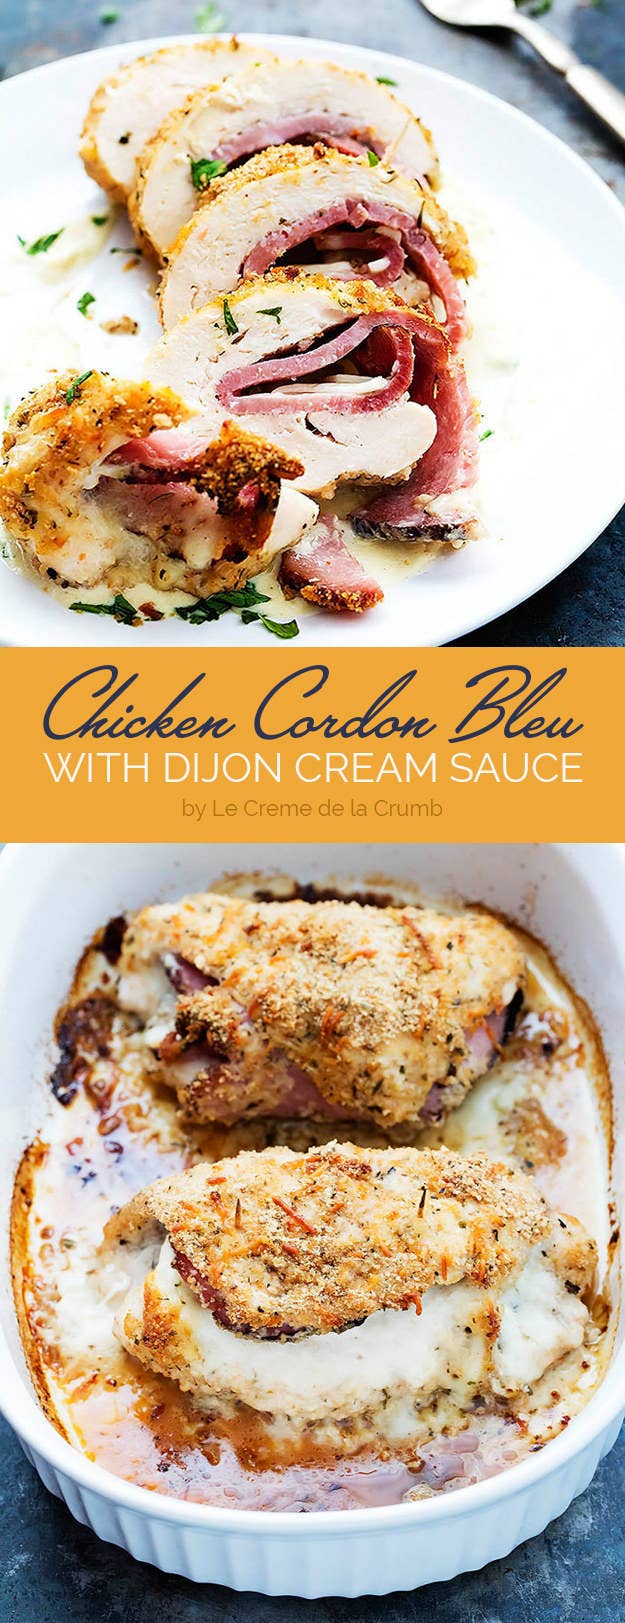 Chicken Cordon Bleu with Dijon Cream Sauce - Creme De La Crumb